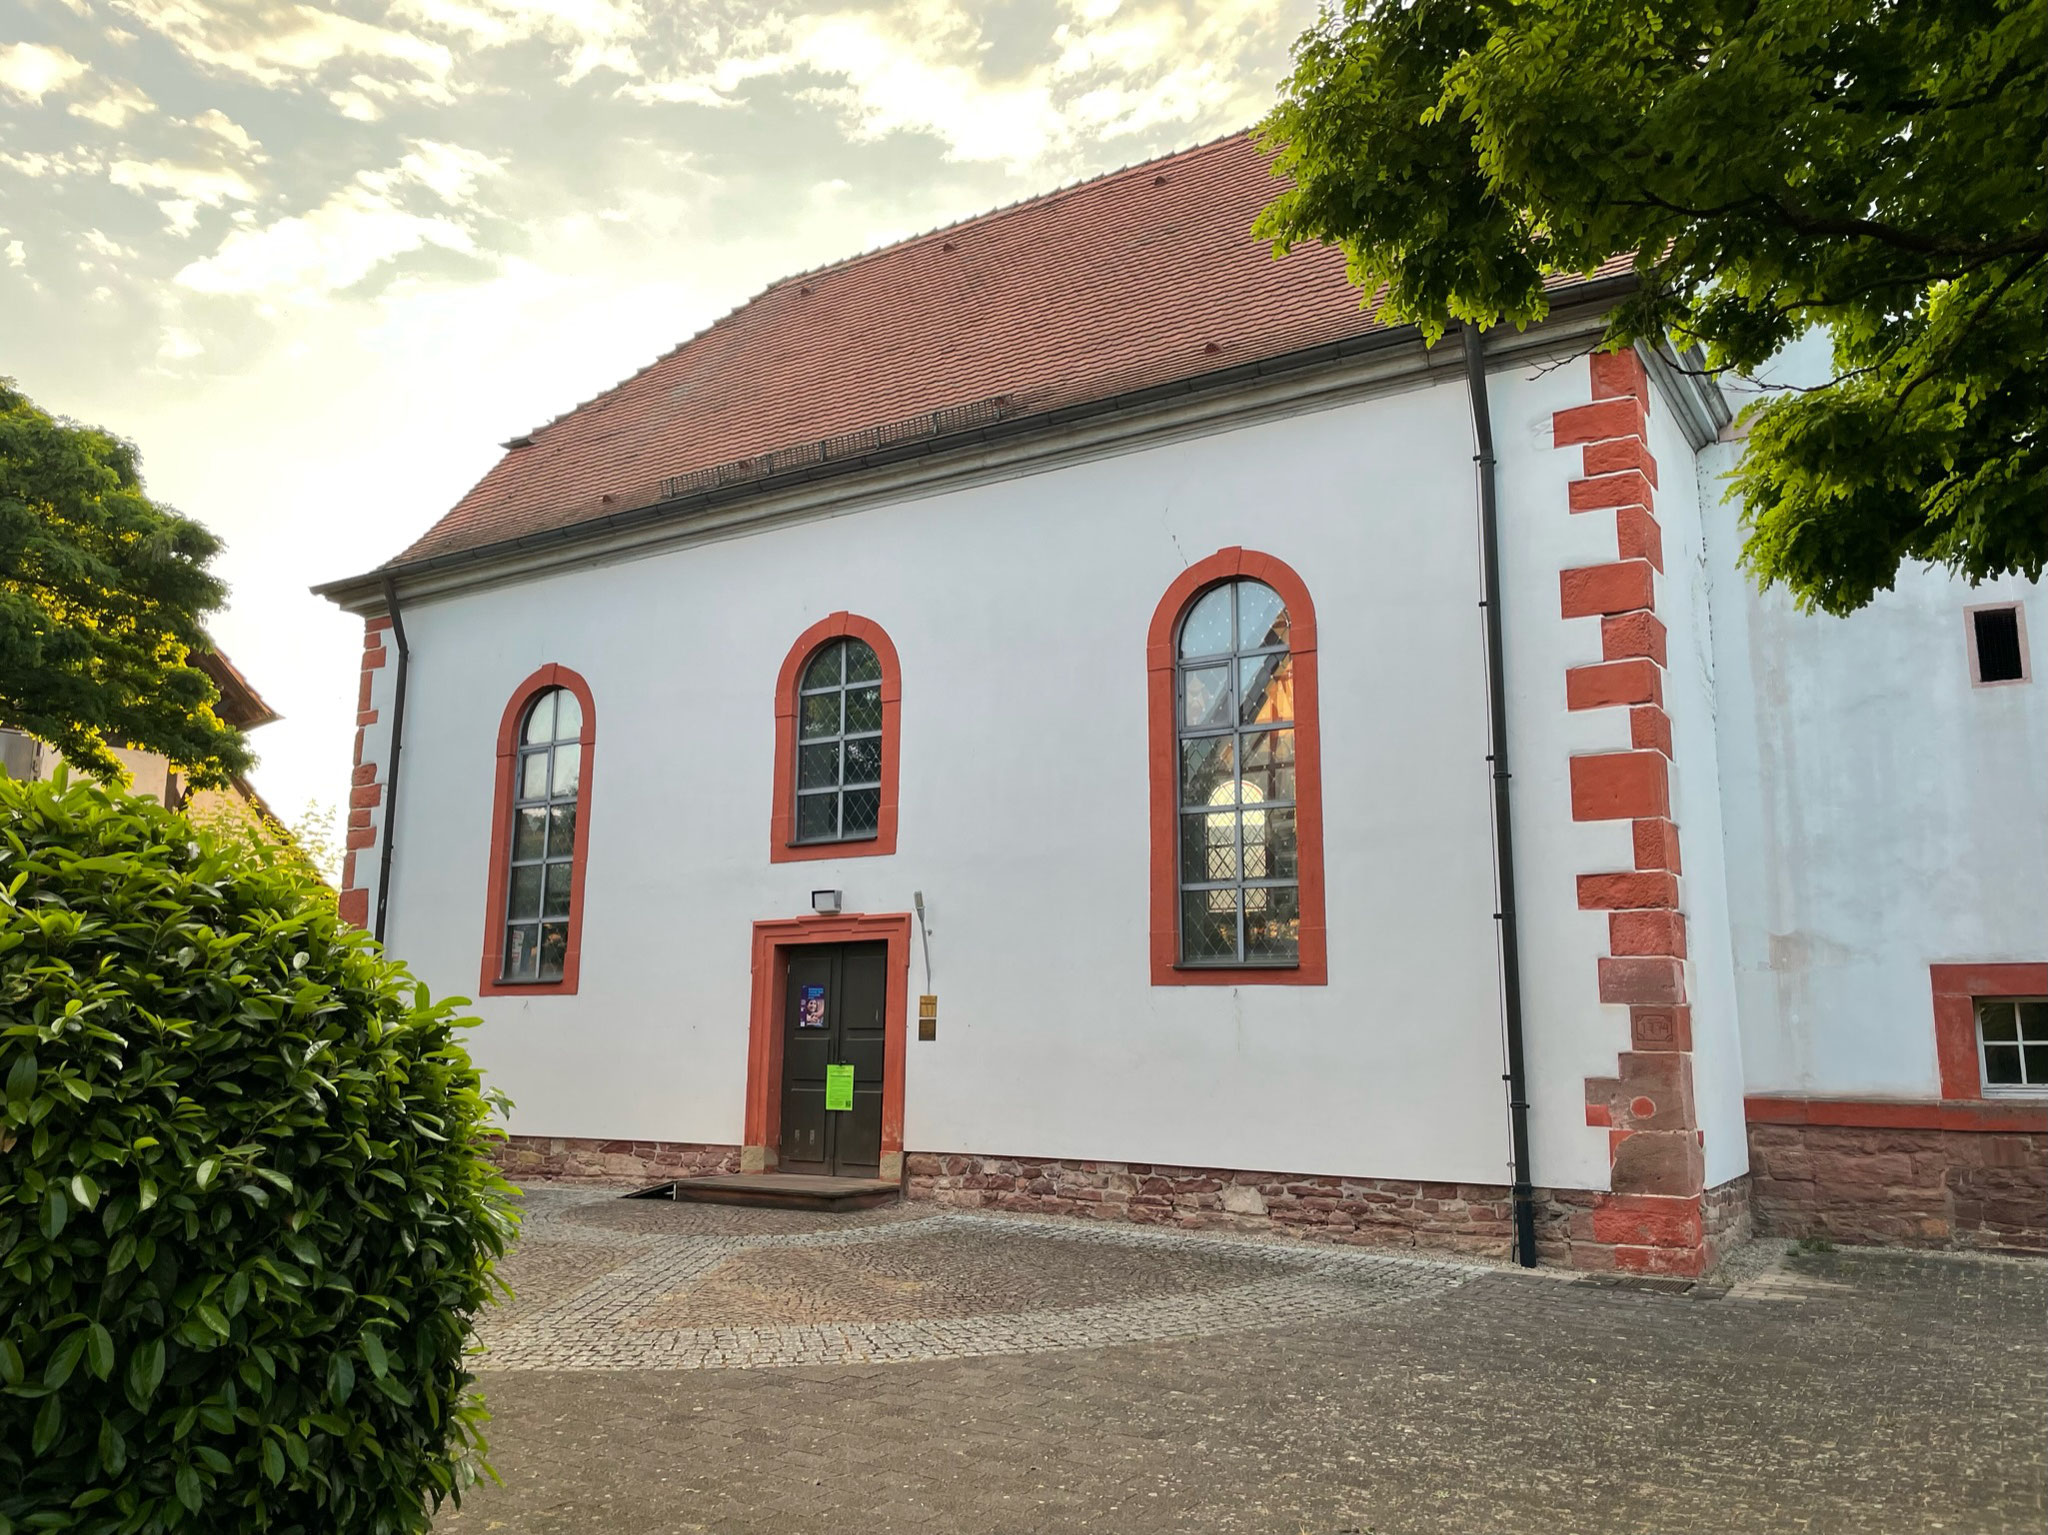 Friedenskirche Neckarburken - Status "Grün"